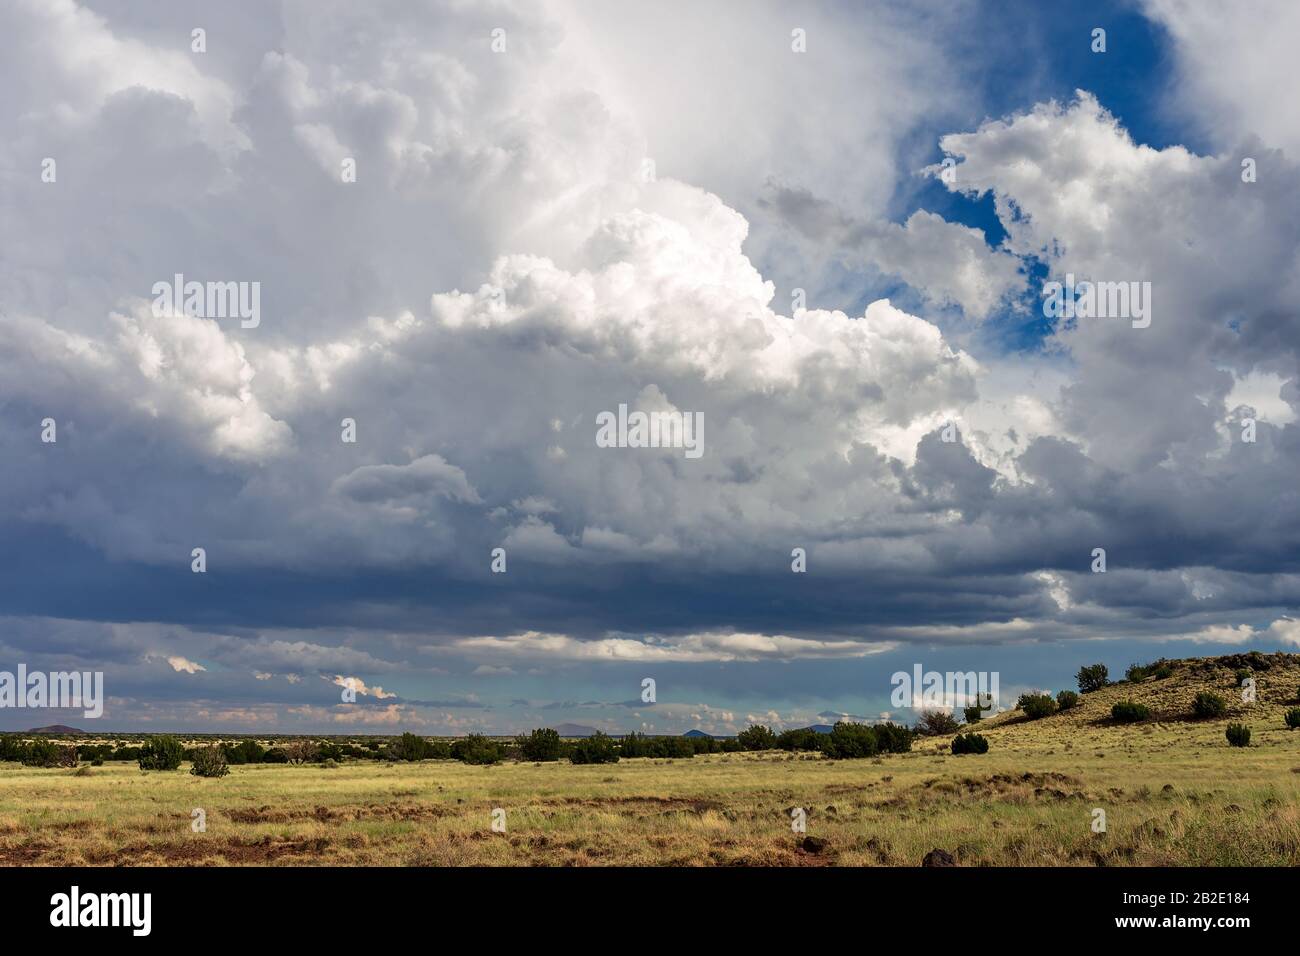 Nuvoloso estivo con nuvole di cumulonimbus bianche e incandescenti da una tempesta di tuore in via di sviluppo vicino a Flagstaff, Arizona Foto Stock